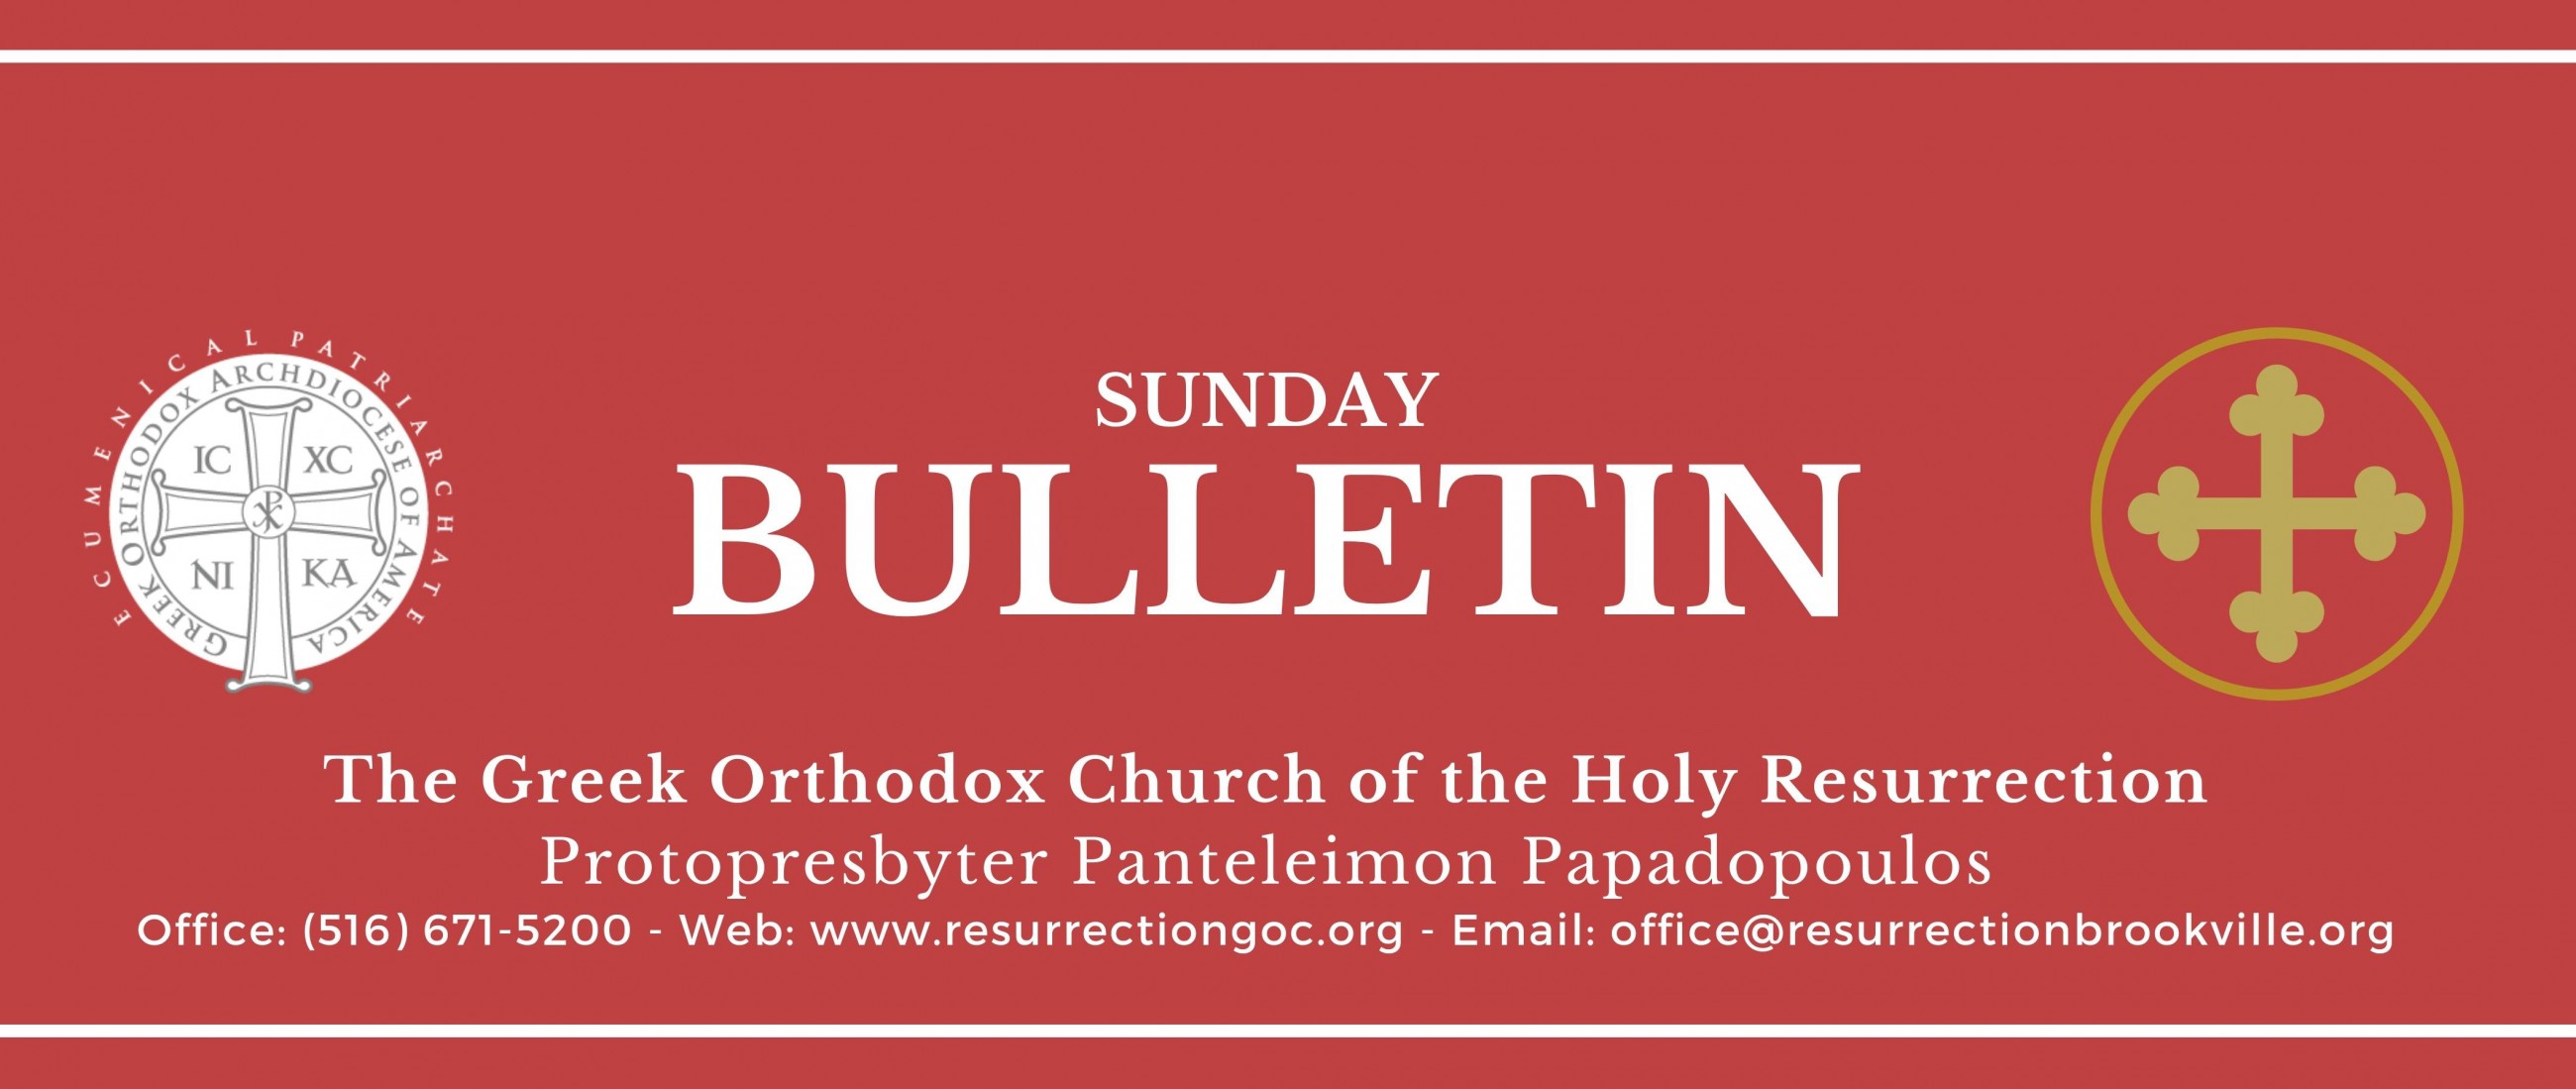 Holy Resurrection Sunday Bulletin